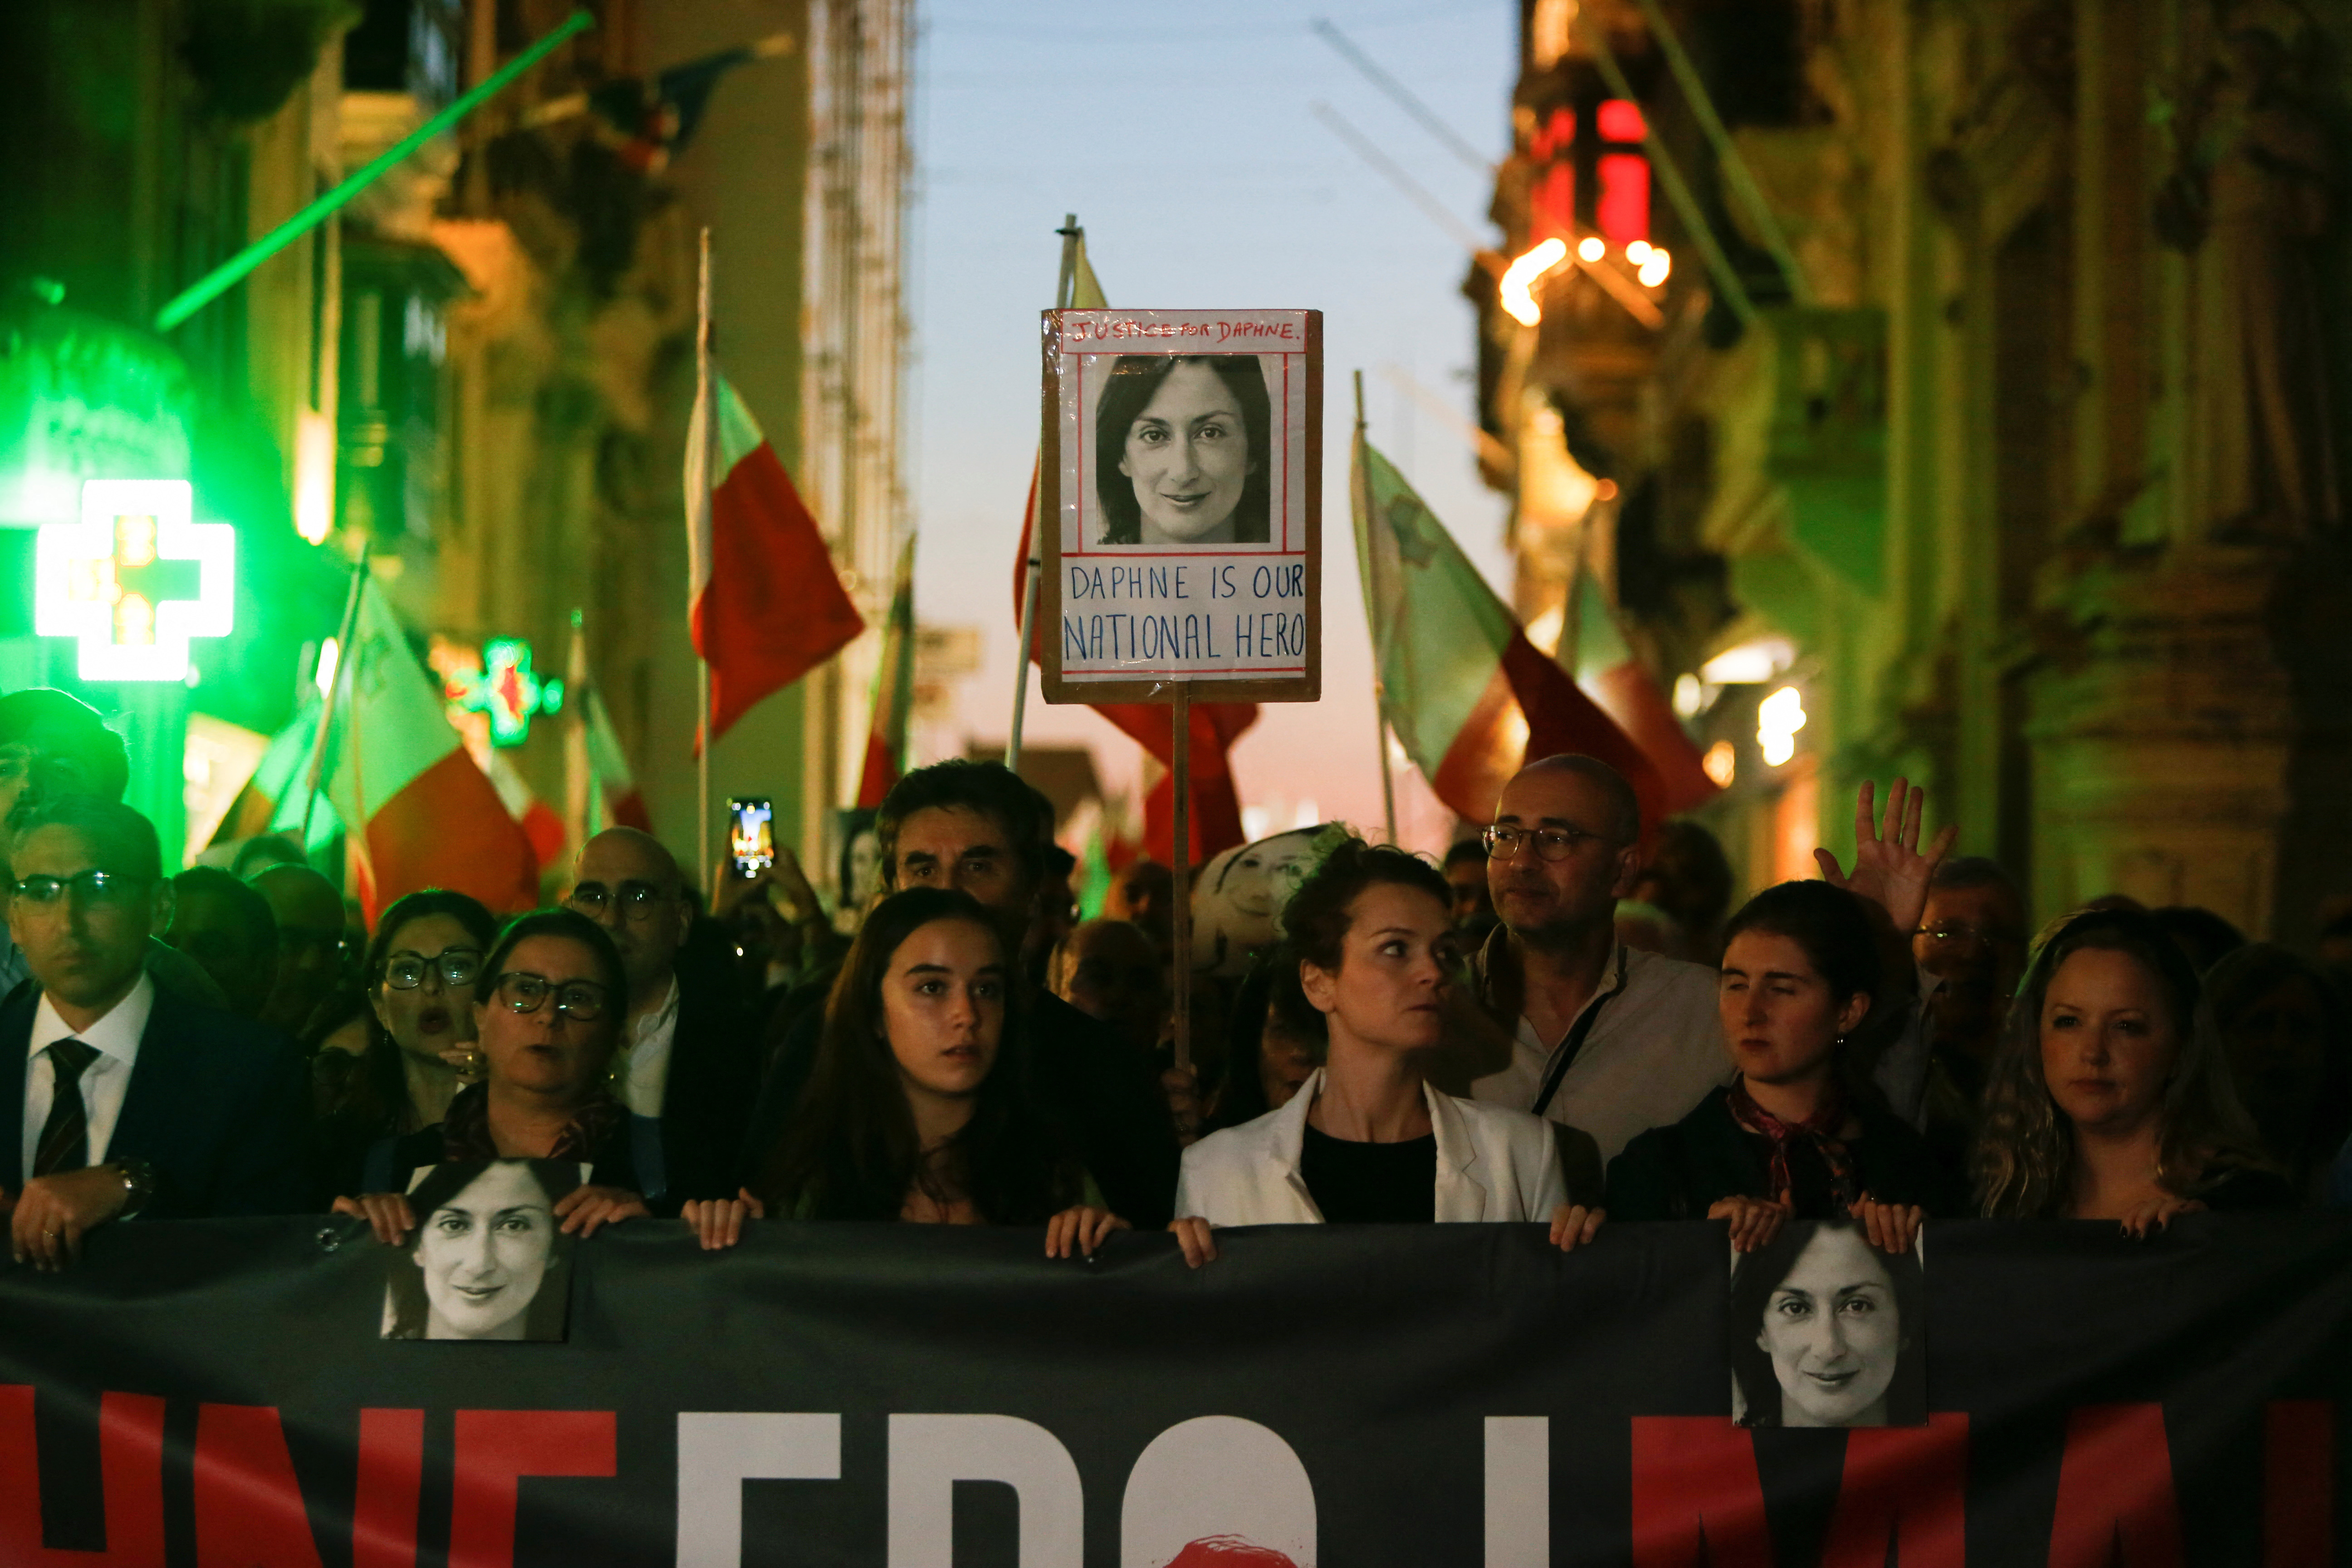 Fifth anniversary of the assassination of journalist Daphne Caruana Galizia in Malta